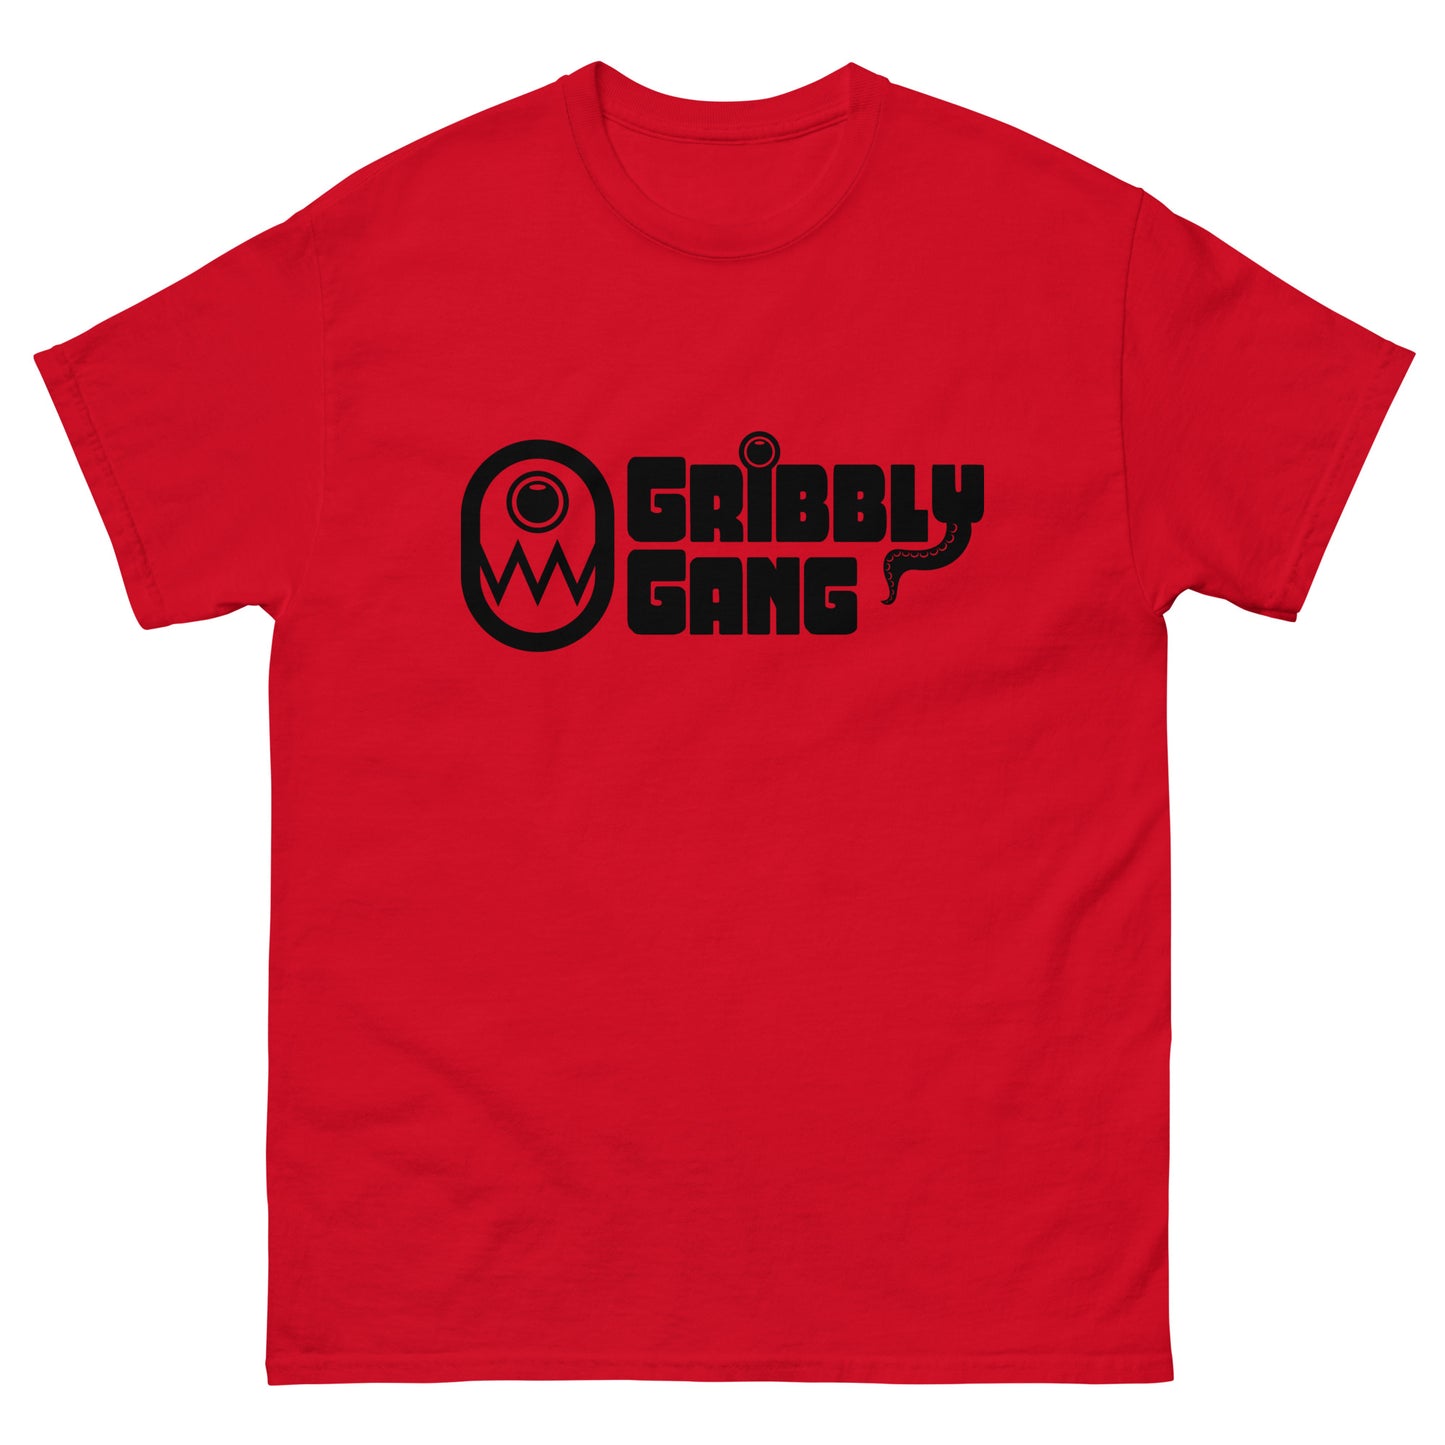 Gribbly Gang Full Logo Tee Black Logo